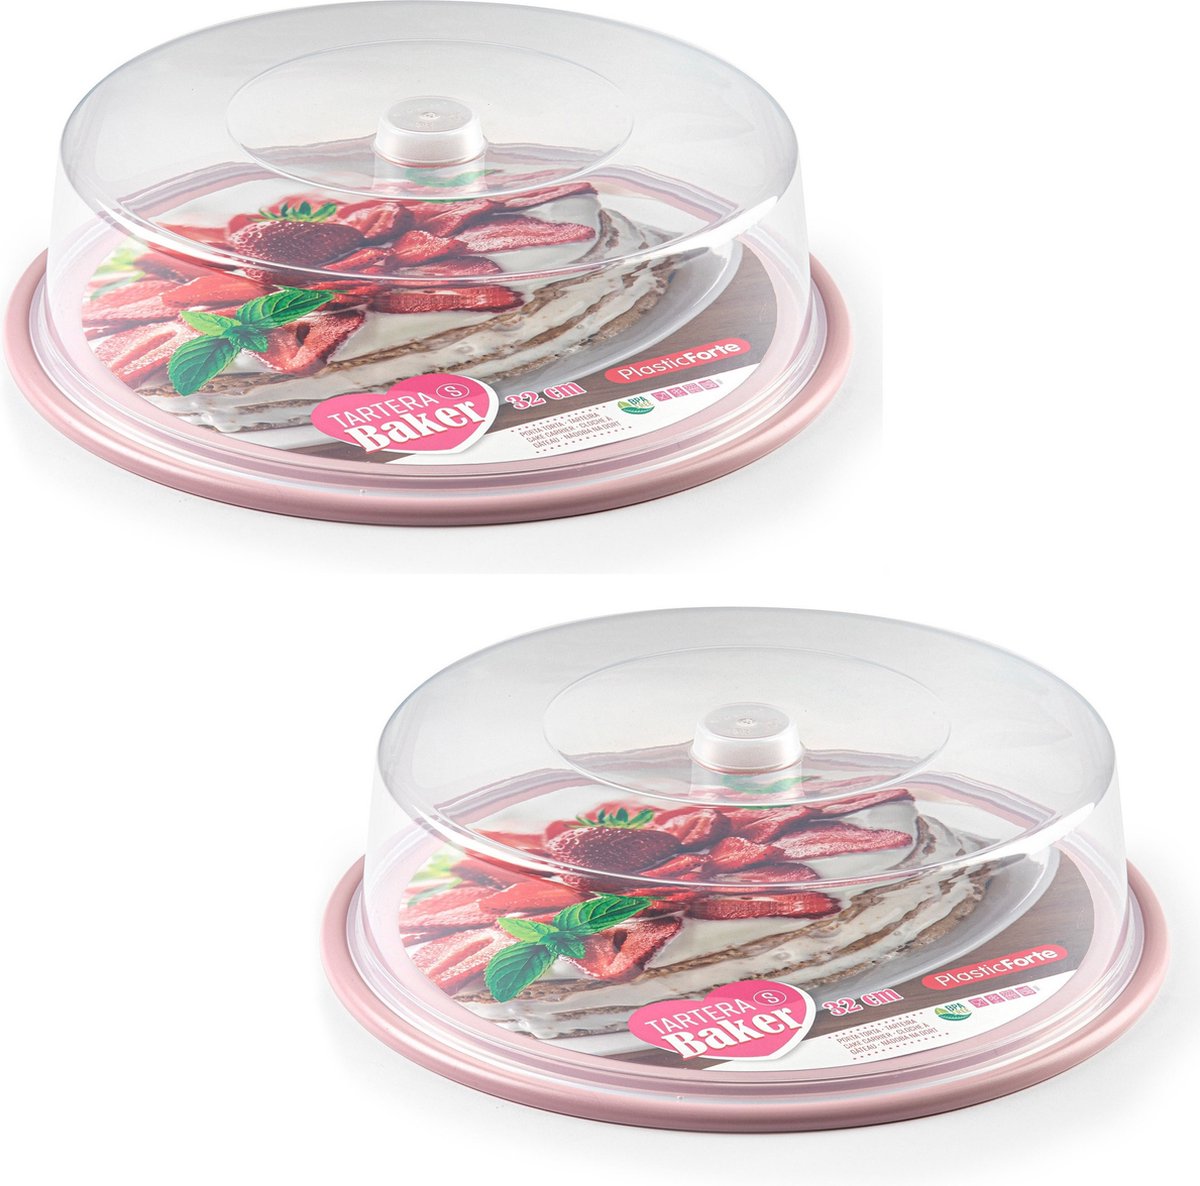 2x stuks ronde taart/gebak bewaardoos transparant 32 x 9,5 cm met roze bodem - Taart bewaren/serveren in box/doos